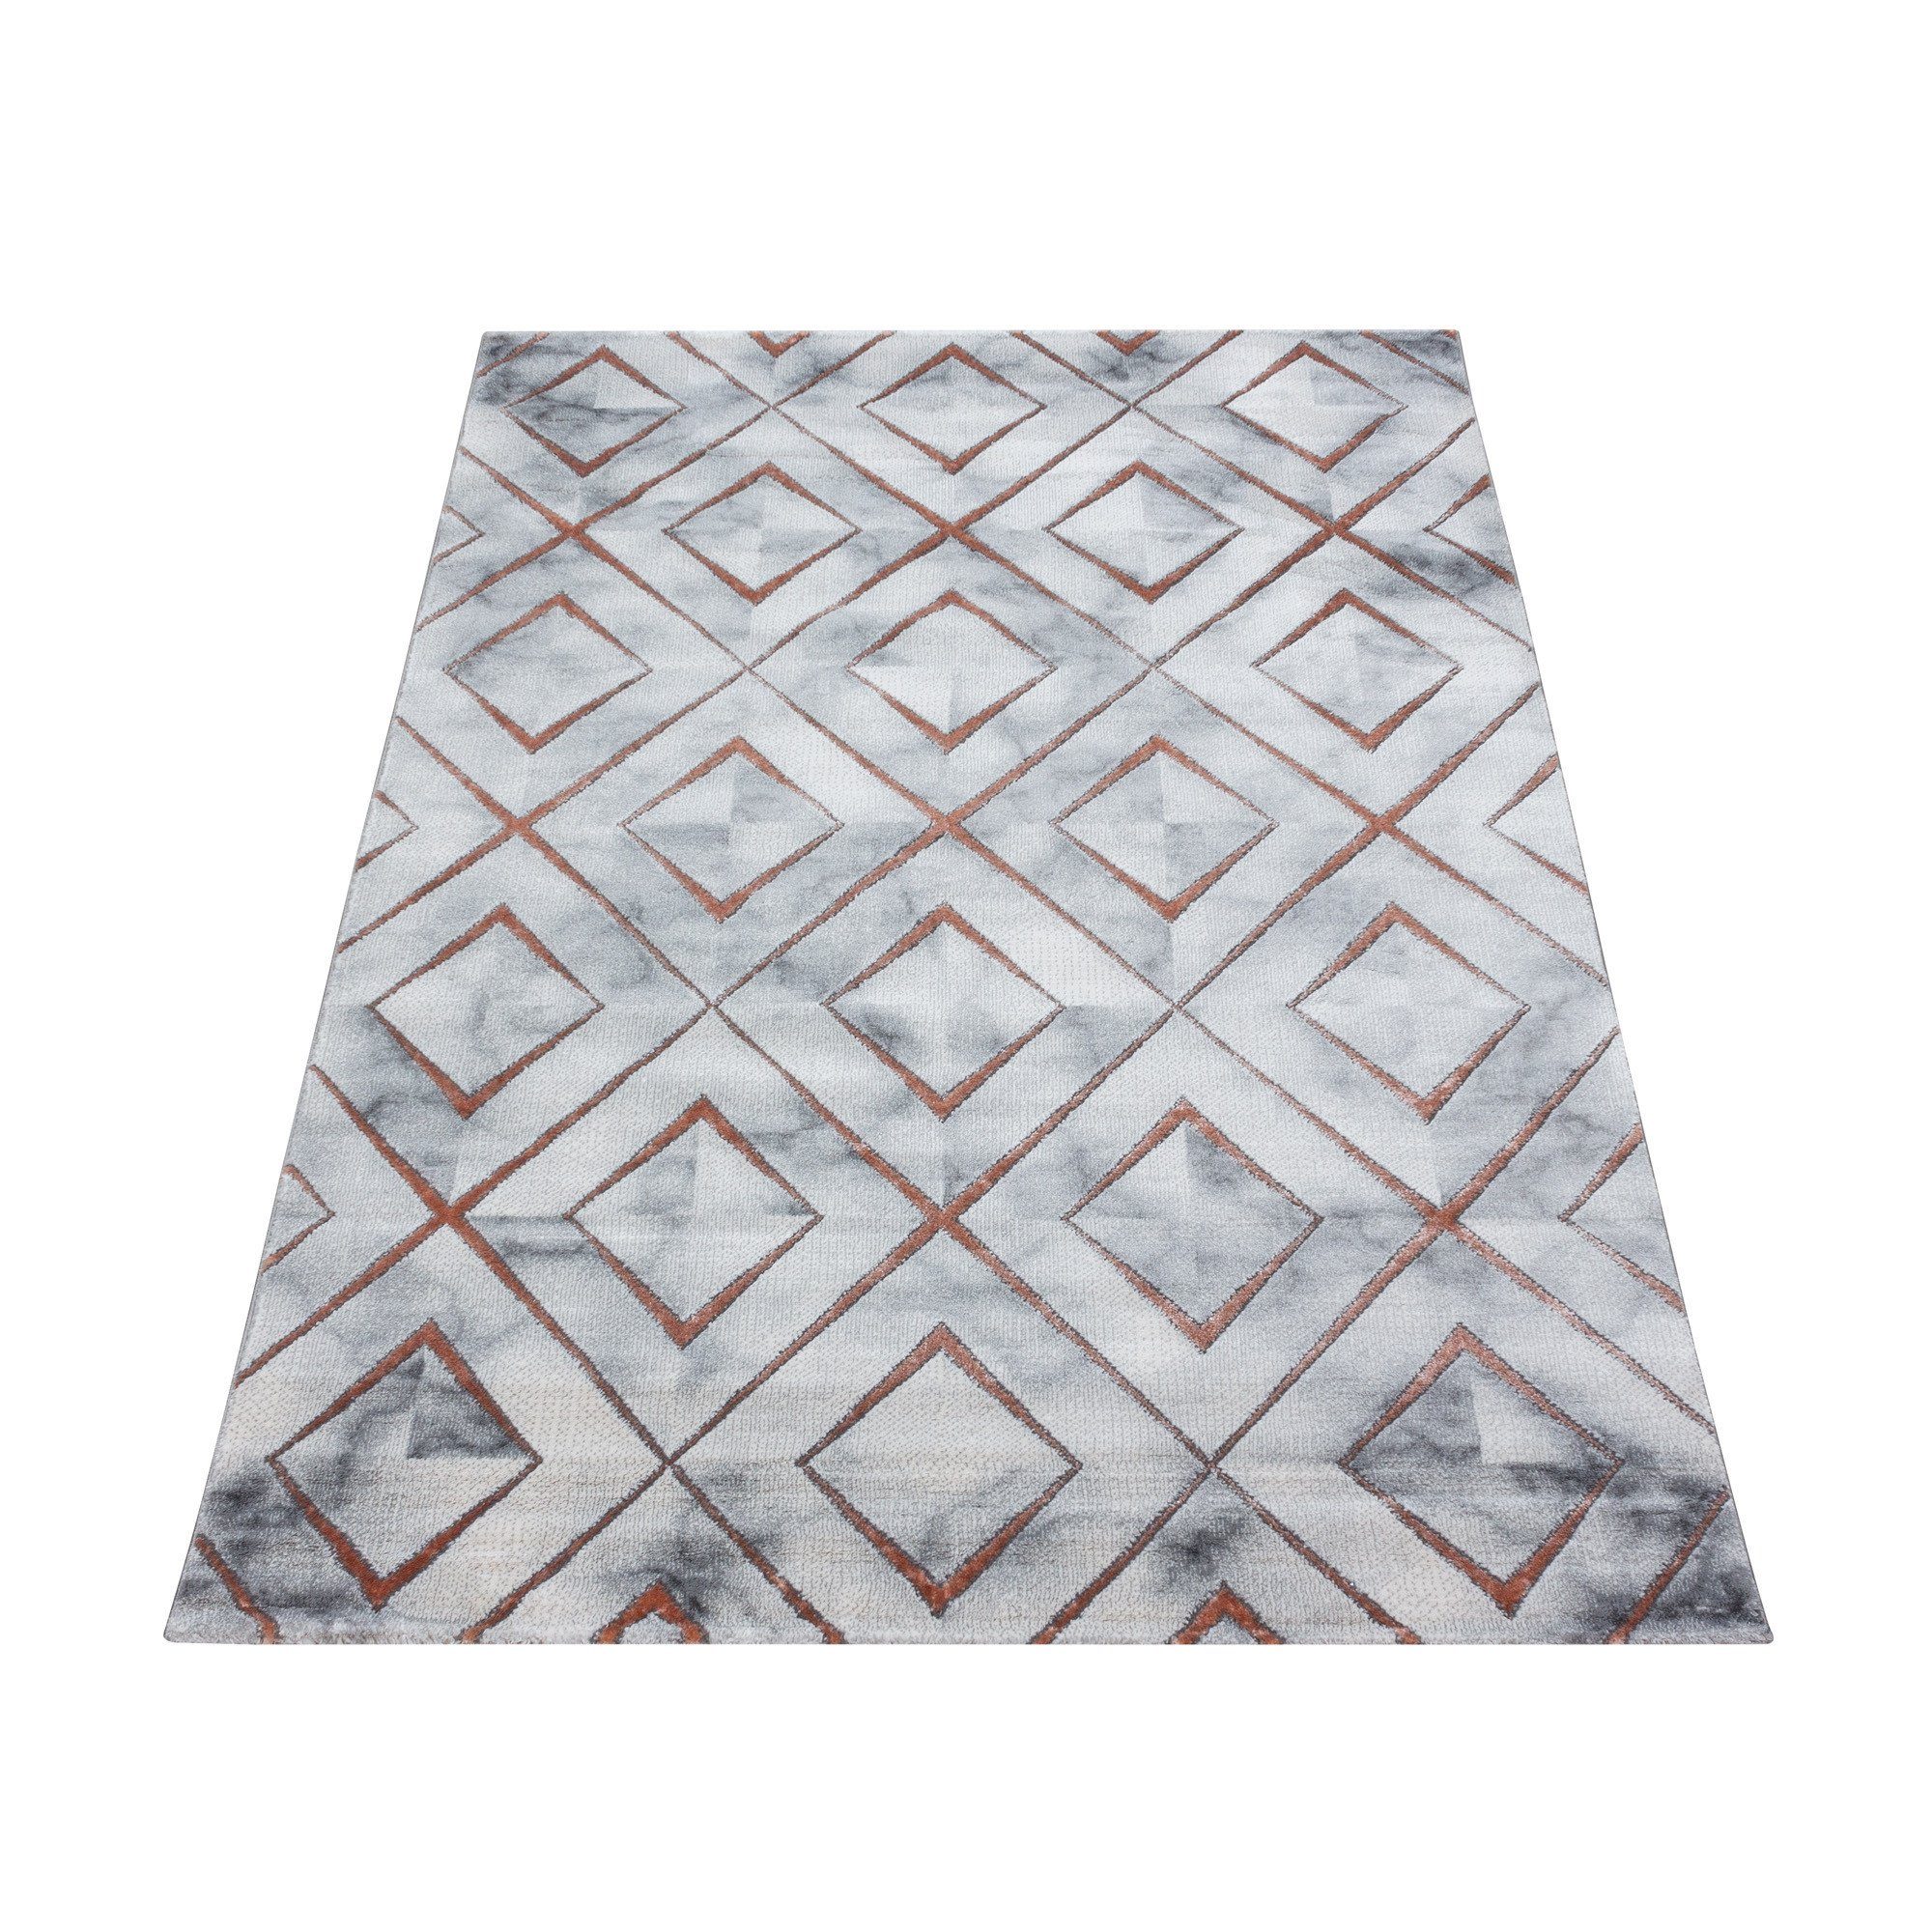 Bronze Flachflorteppich Designteppich Muster, Kurzflorteppich Giancasa Marmoroptik Wohnzimmer